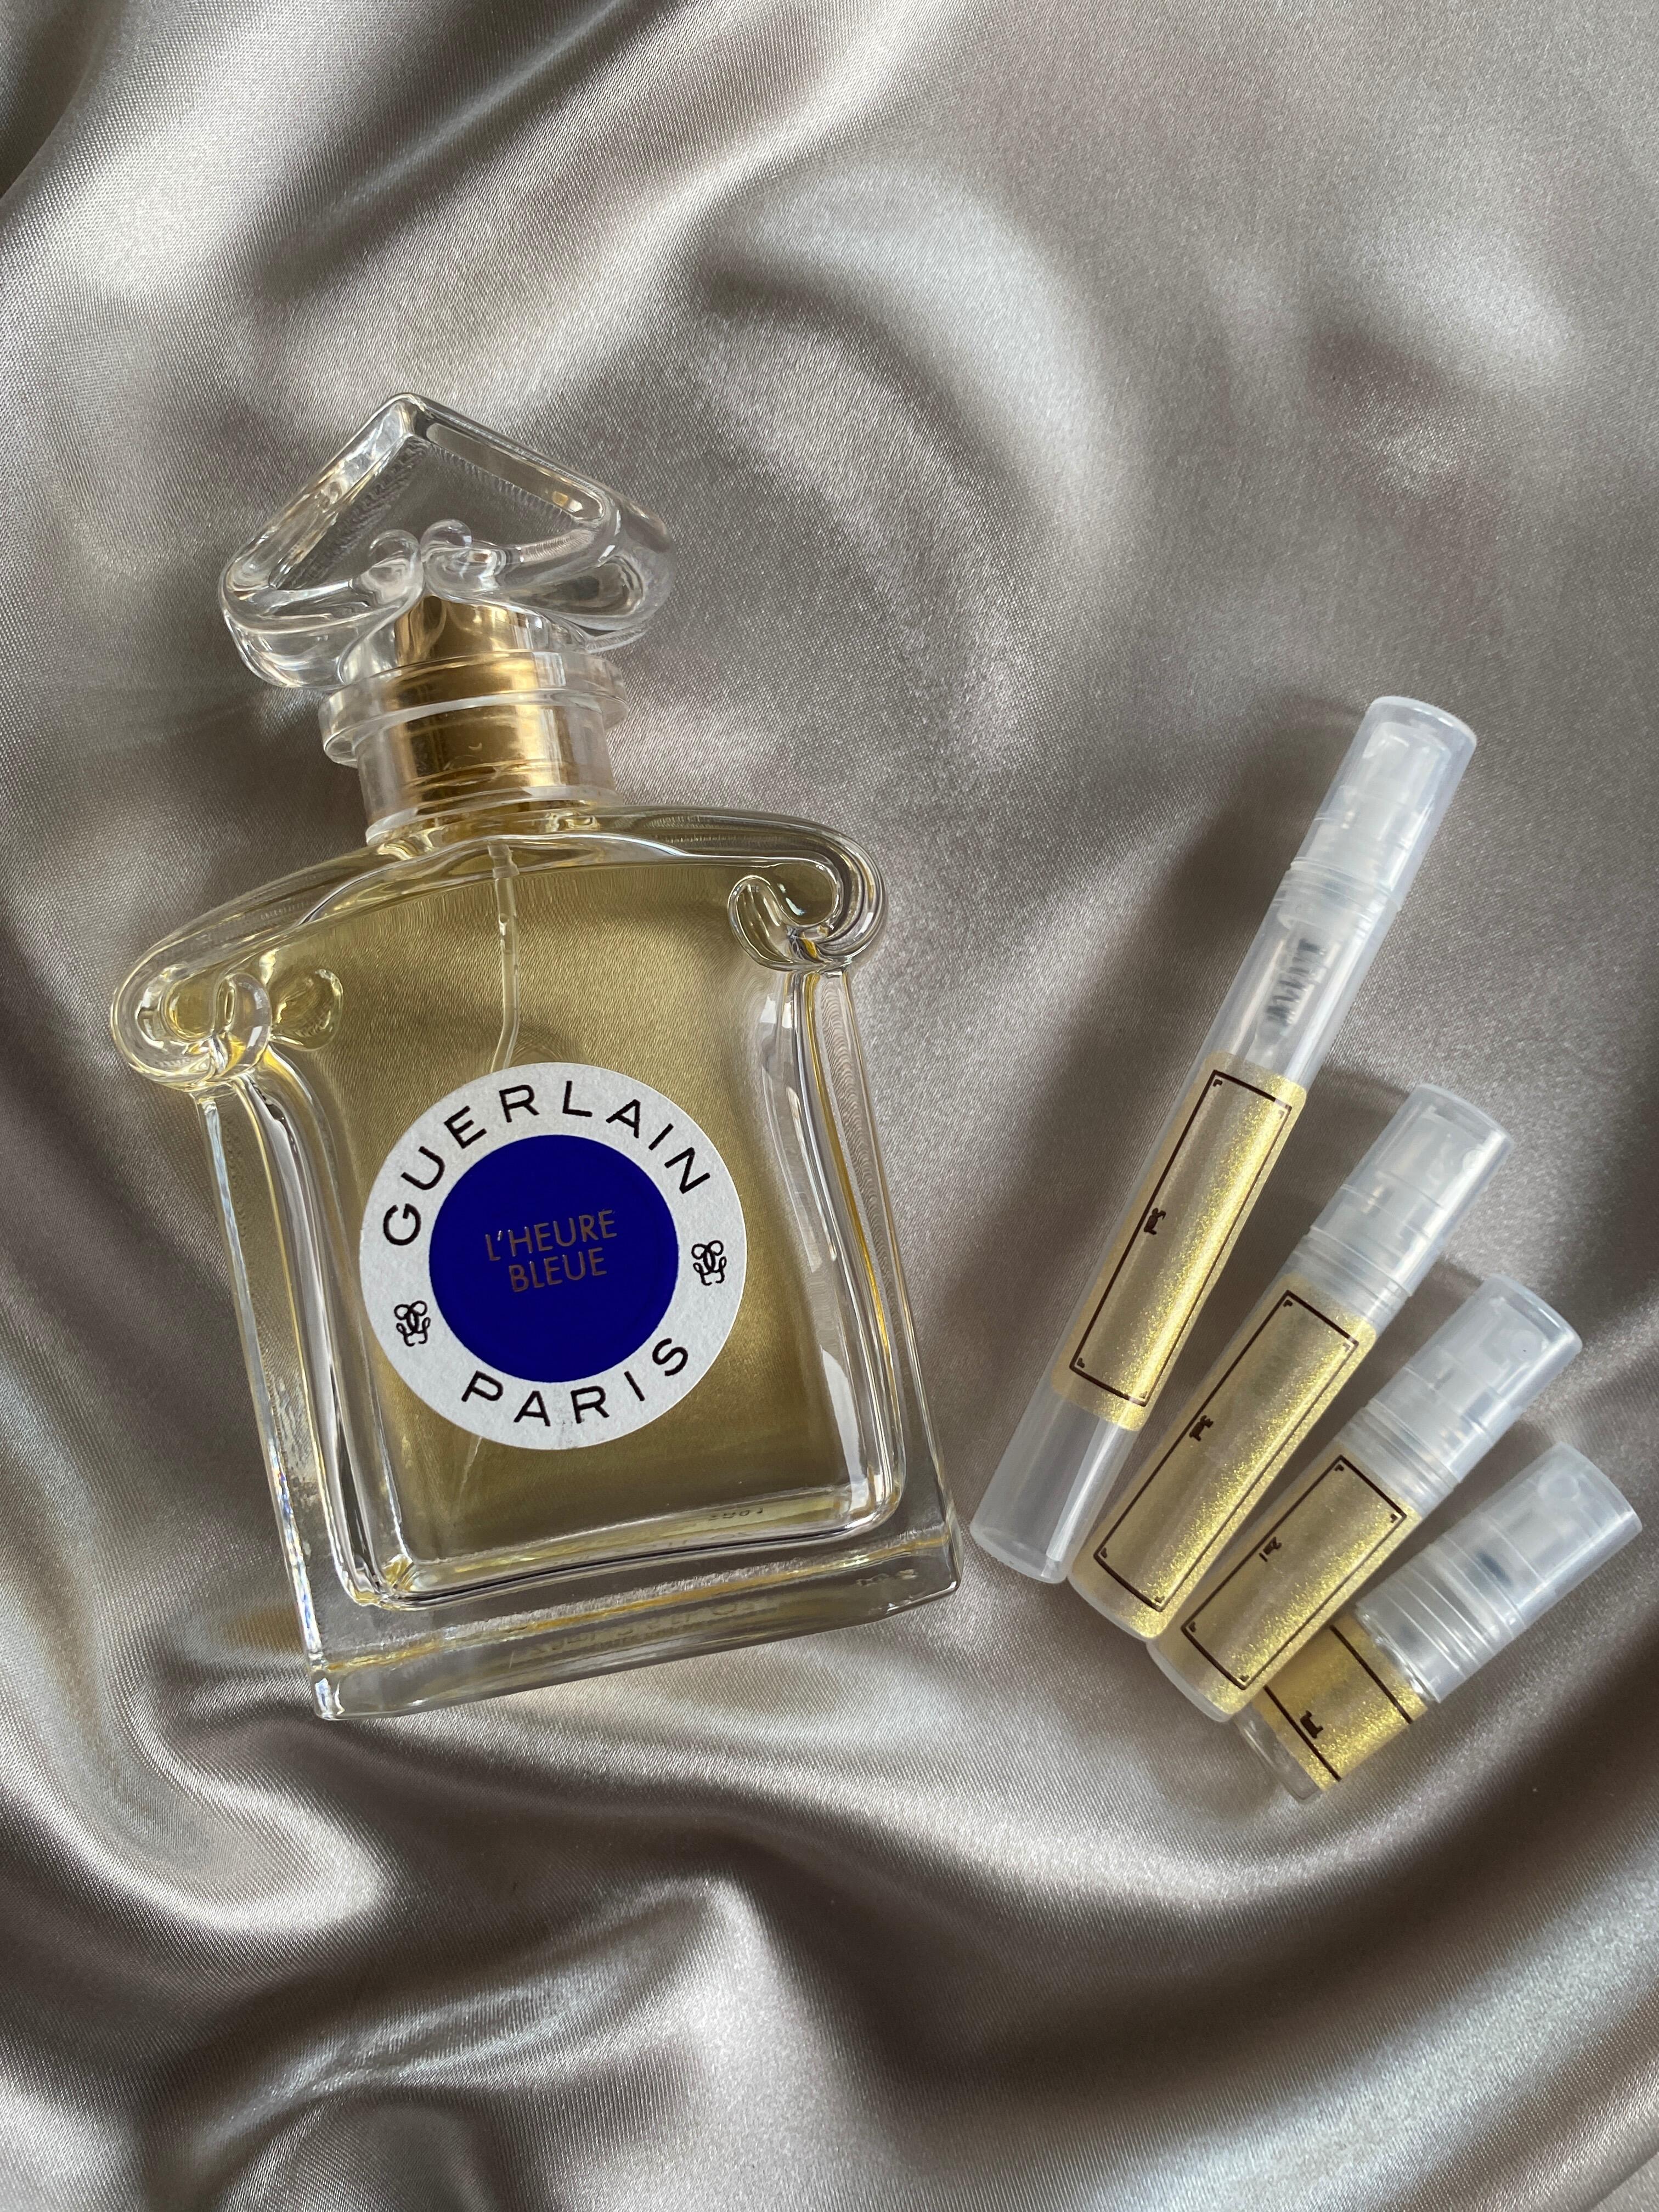 Guerlain fragrance samples in various sizes